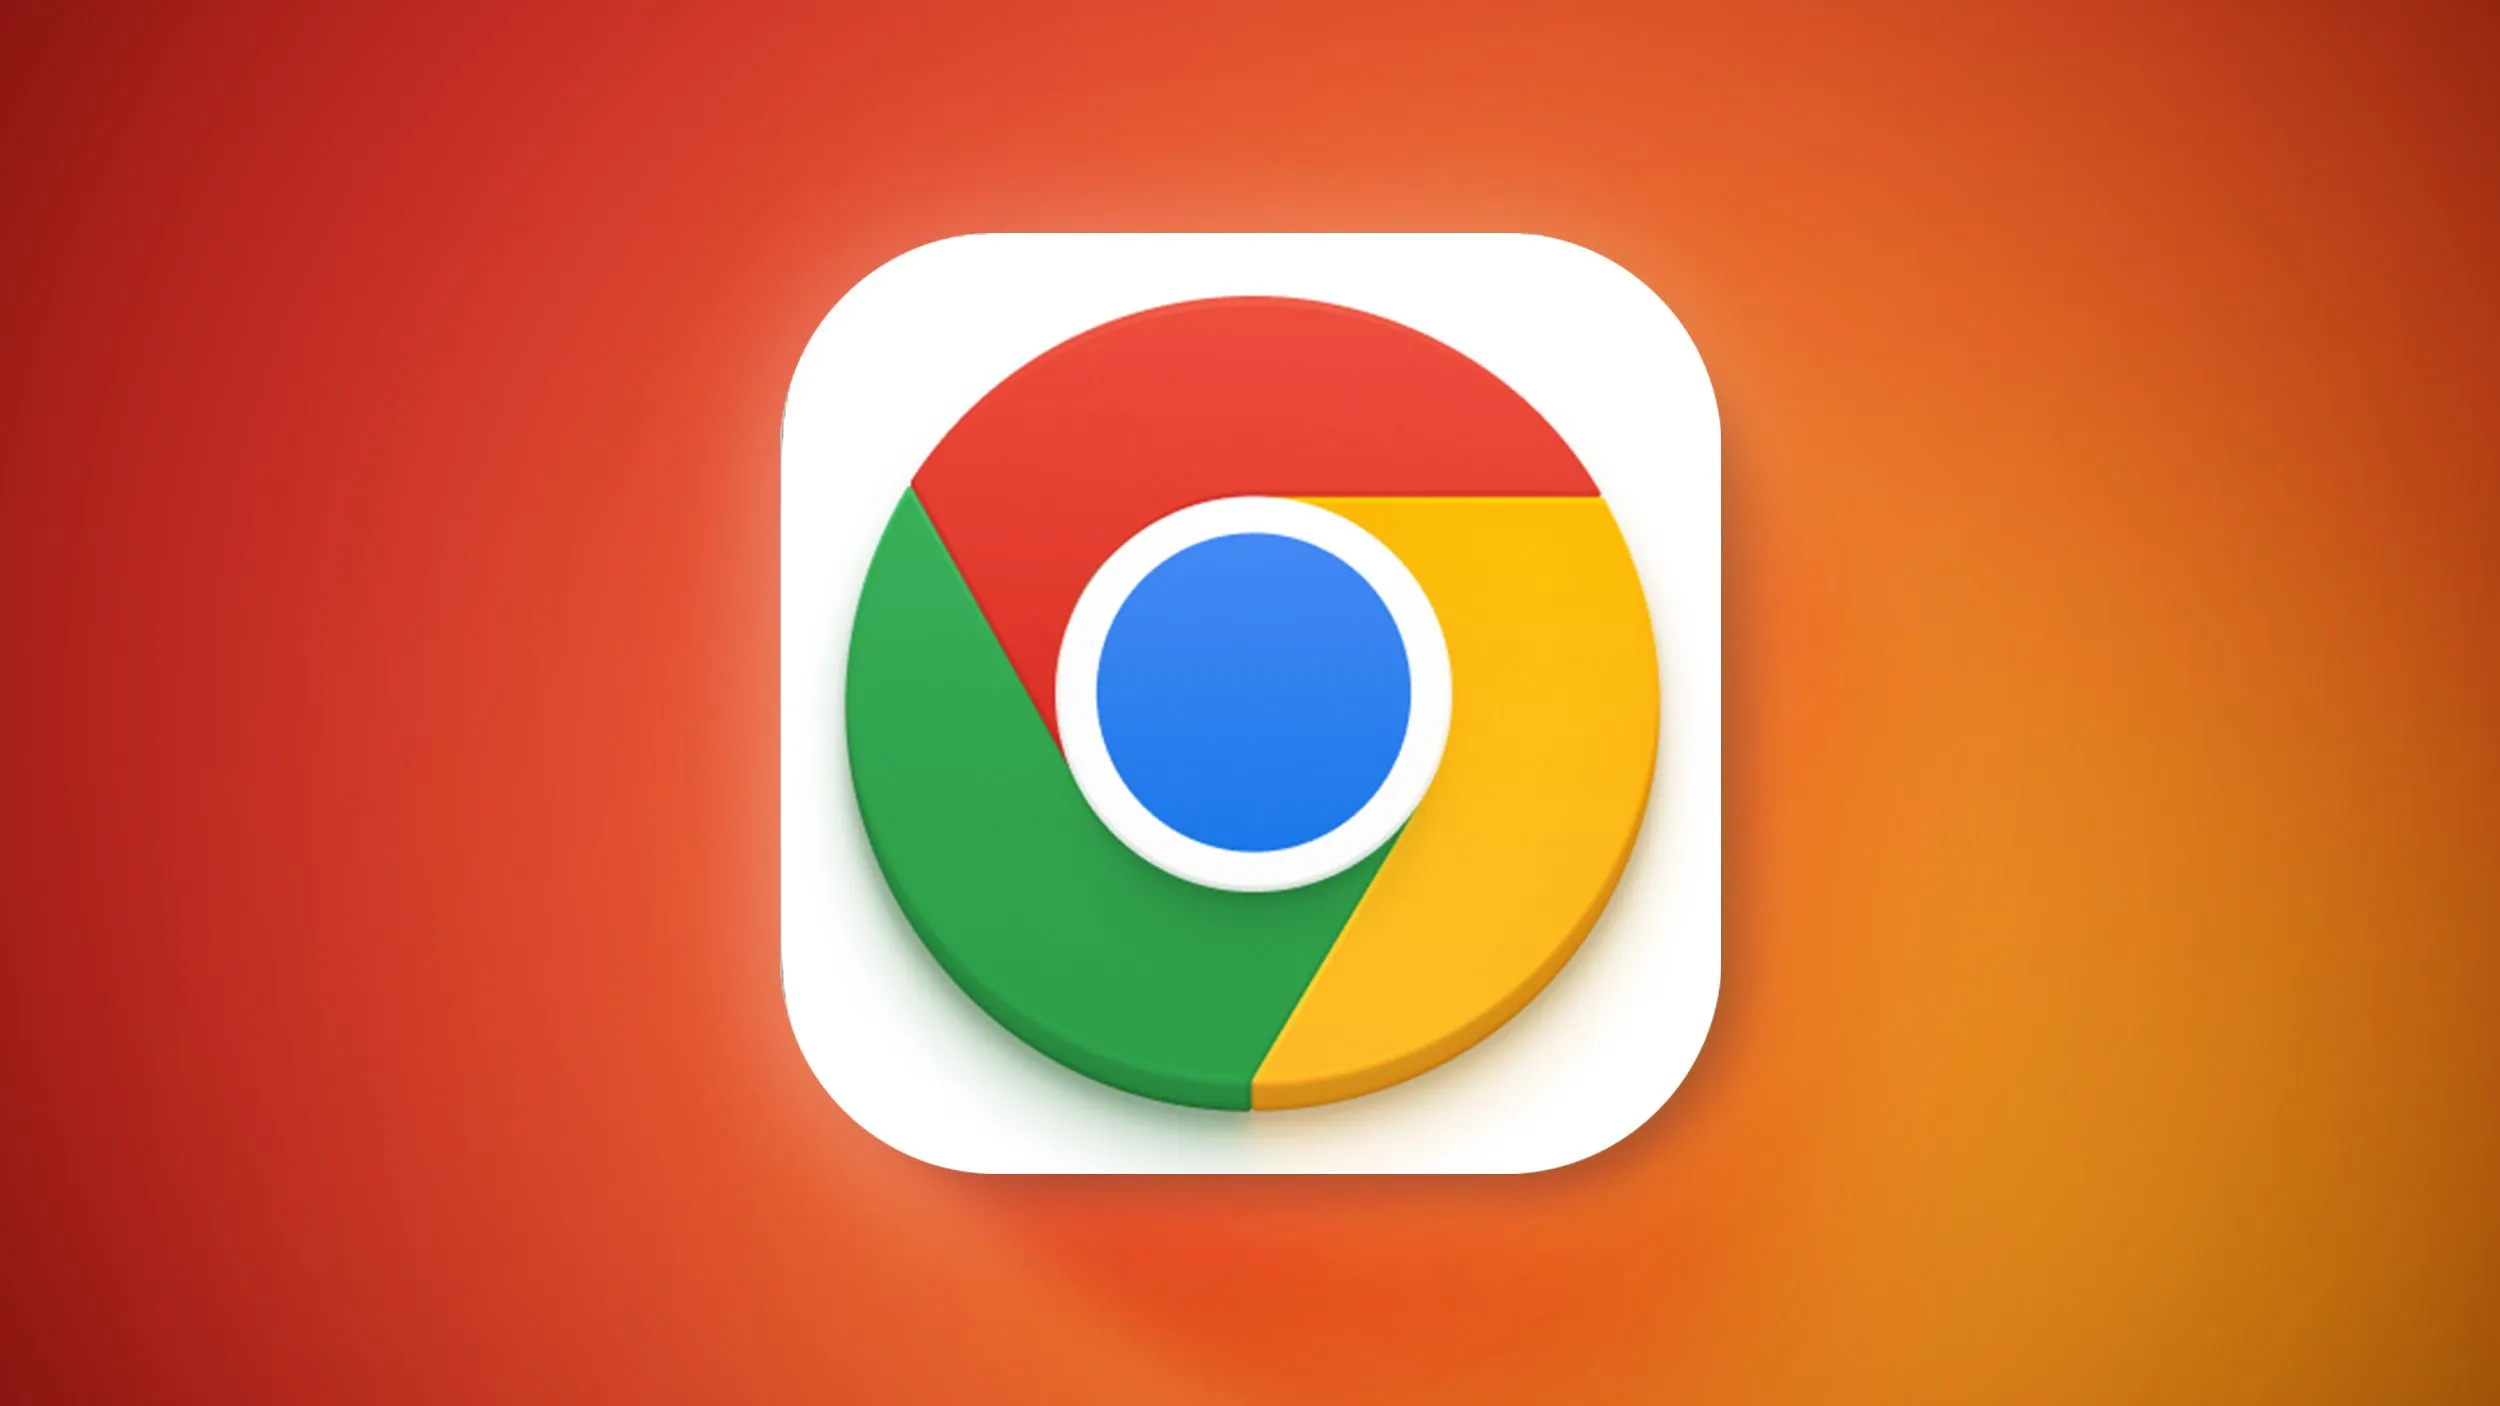 Google giới thiệu 5 cập nhật mới cho thanh địa chỉ của trình duyệt Chrome